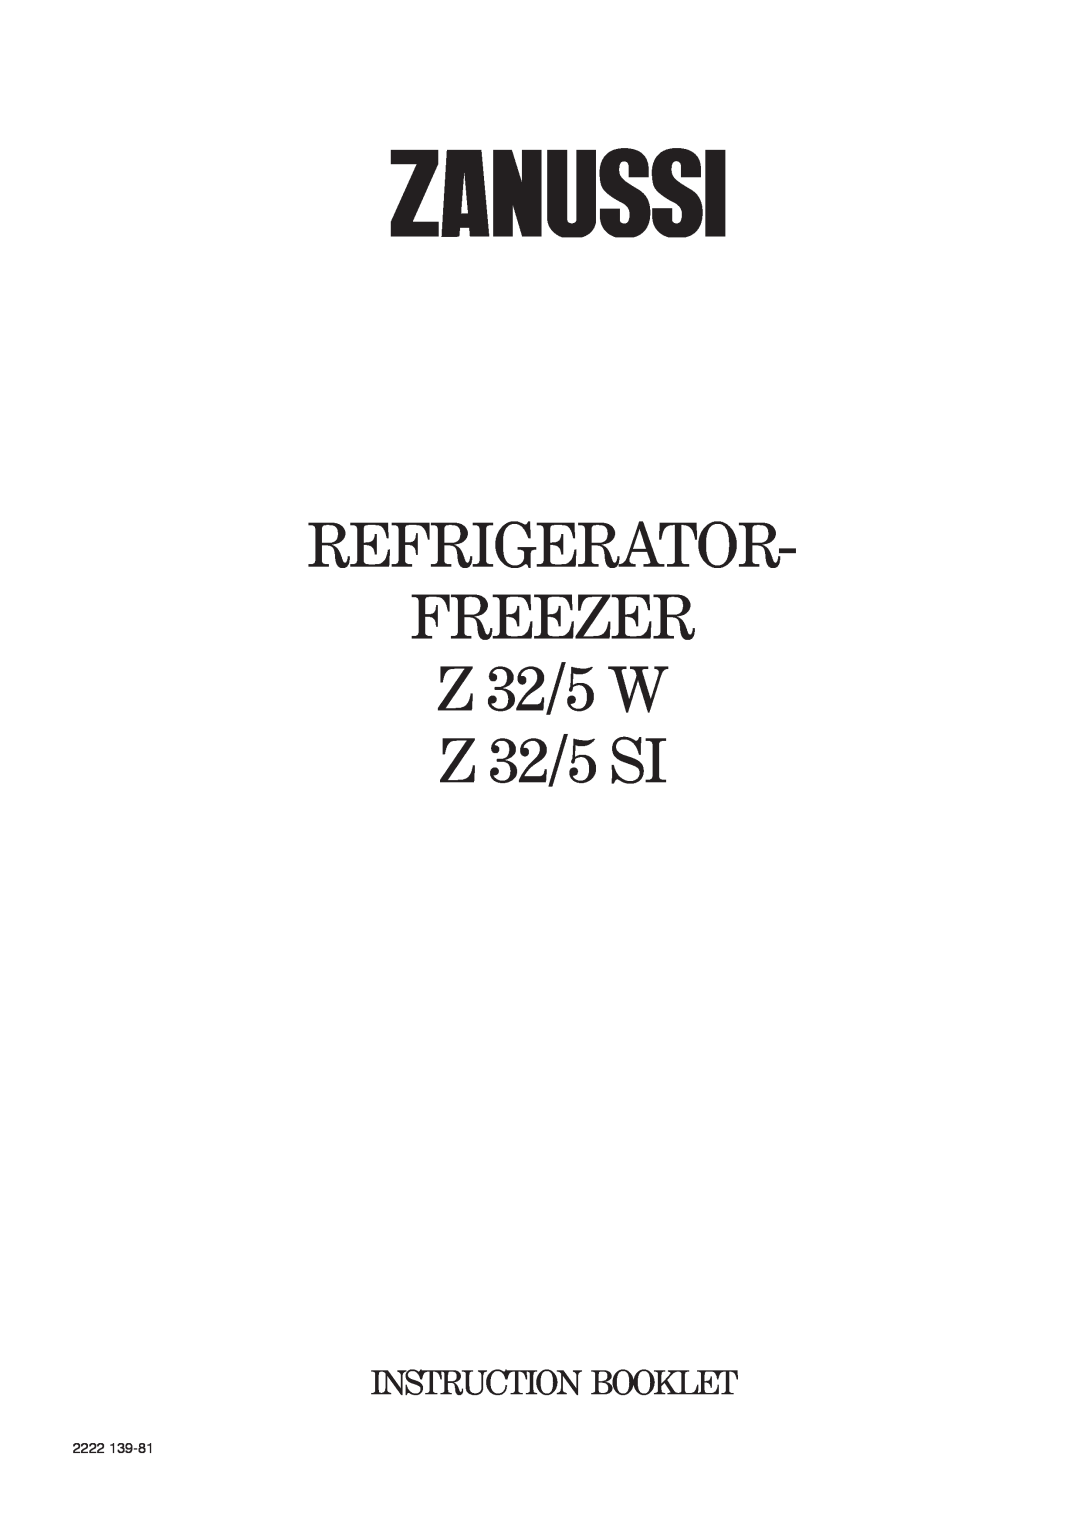 Zanussi manual REFRIGERATOR FREEZER Z 32/5 W Z 32/5 SI, Instruction Booklet, 2222 